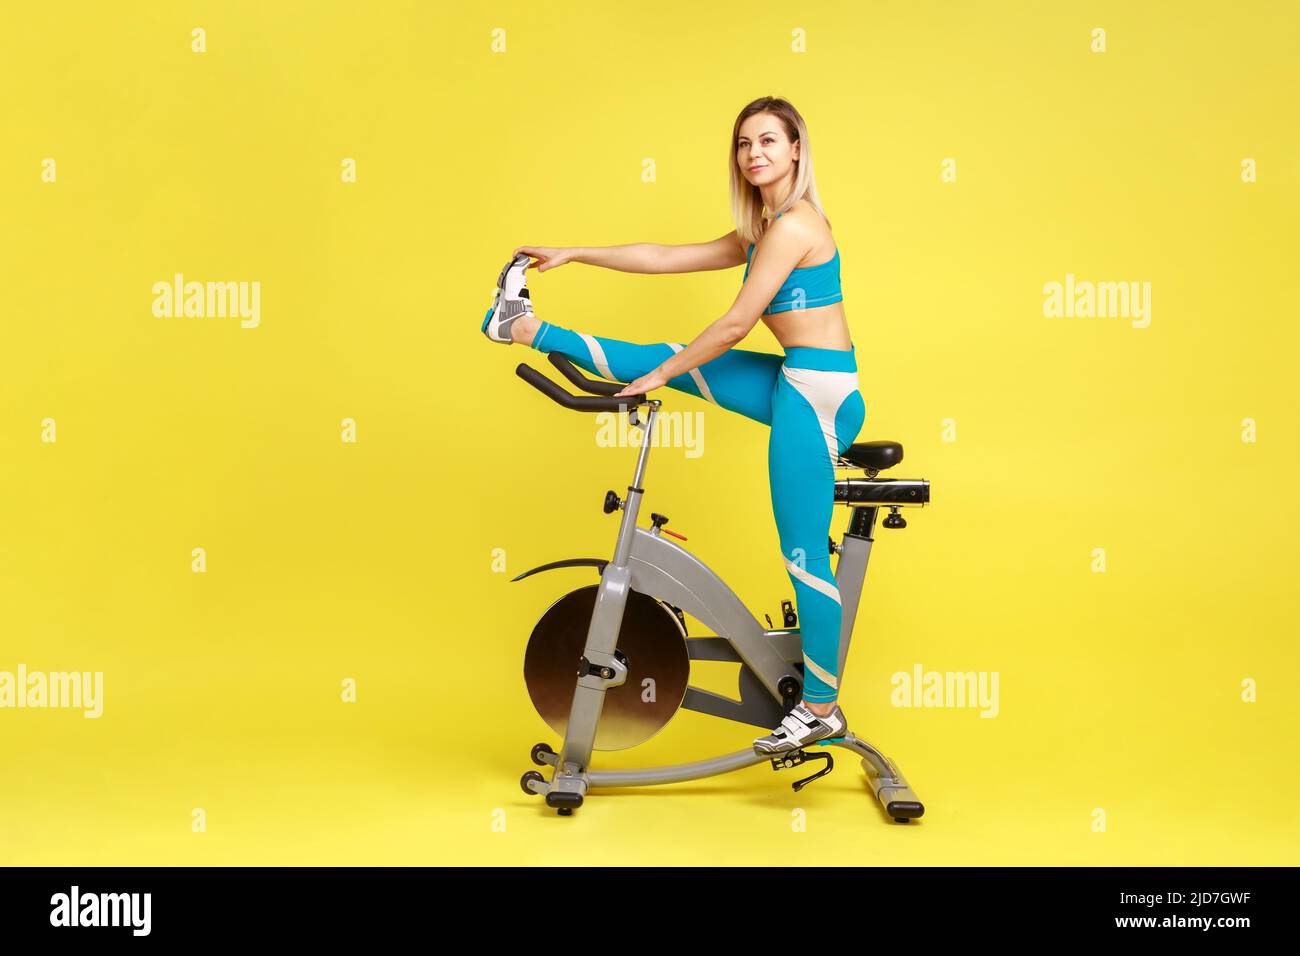 Ritratto a tutta lunghezza di bella atletica donna che stretching gamba prima di allenarsi in bici esercizio, guardare via, indossando abbigliamento sportivo blu. Studio interno girato isolato su sfondo giallo. Foto Stock